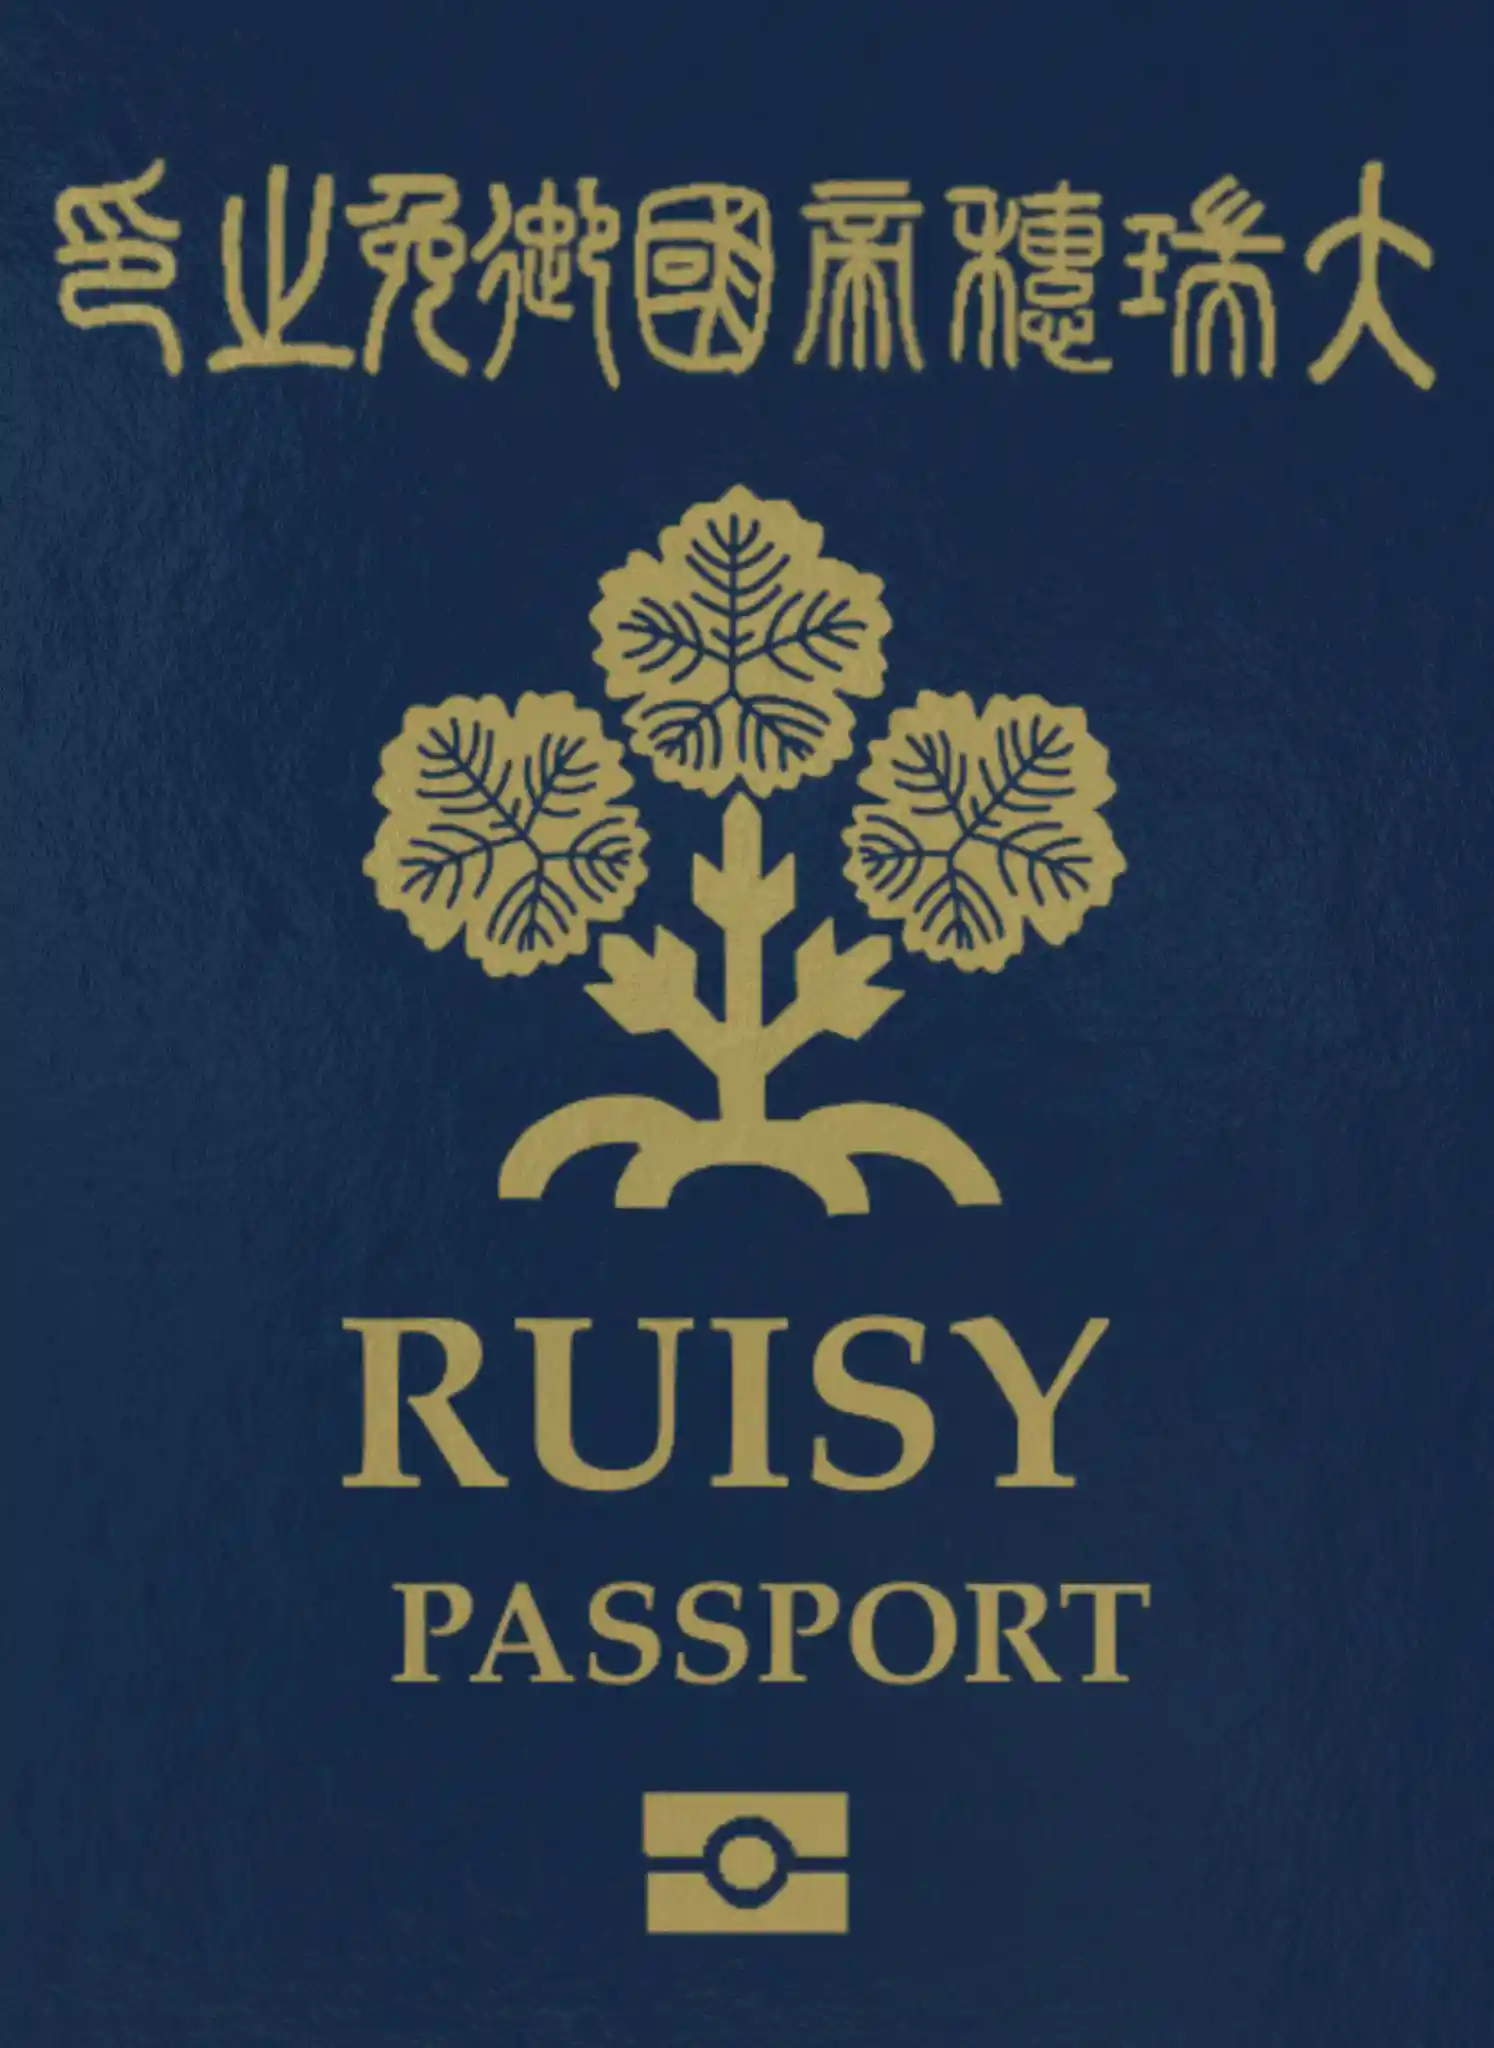 passport5.jpg